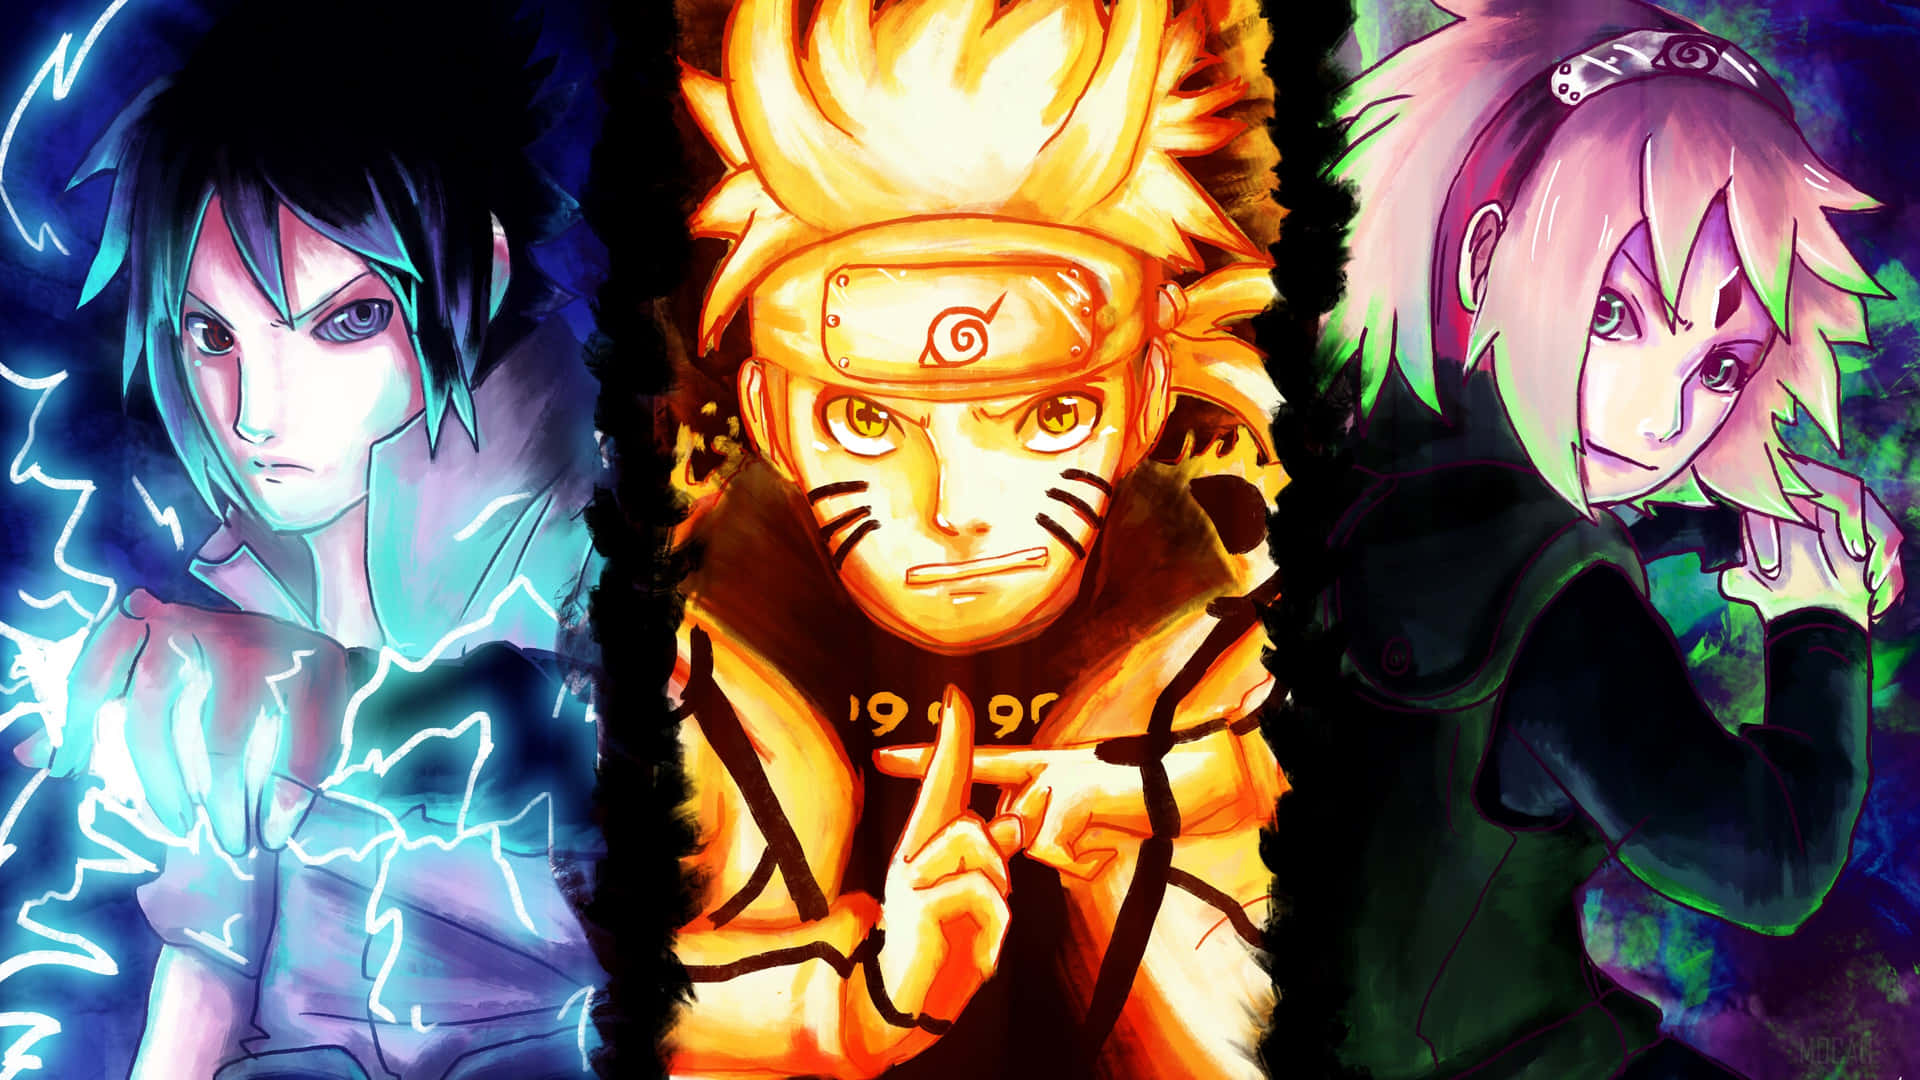 Naruto Group Wallpaper sẽ khiến tất cả những ai yêu thích phiêu lưu của Naruto phải say đắm. Những hình ảnh đầy hấp dẫn và những nhân vật được yêu thích nhất sẽ đem lại cảm giác vui vẻ và hứng khởi cho màn hình thiết bị của bạn.